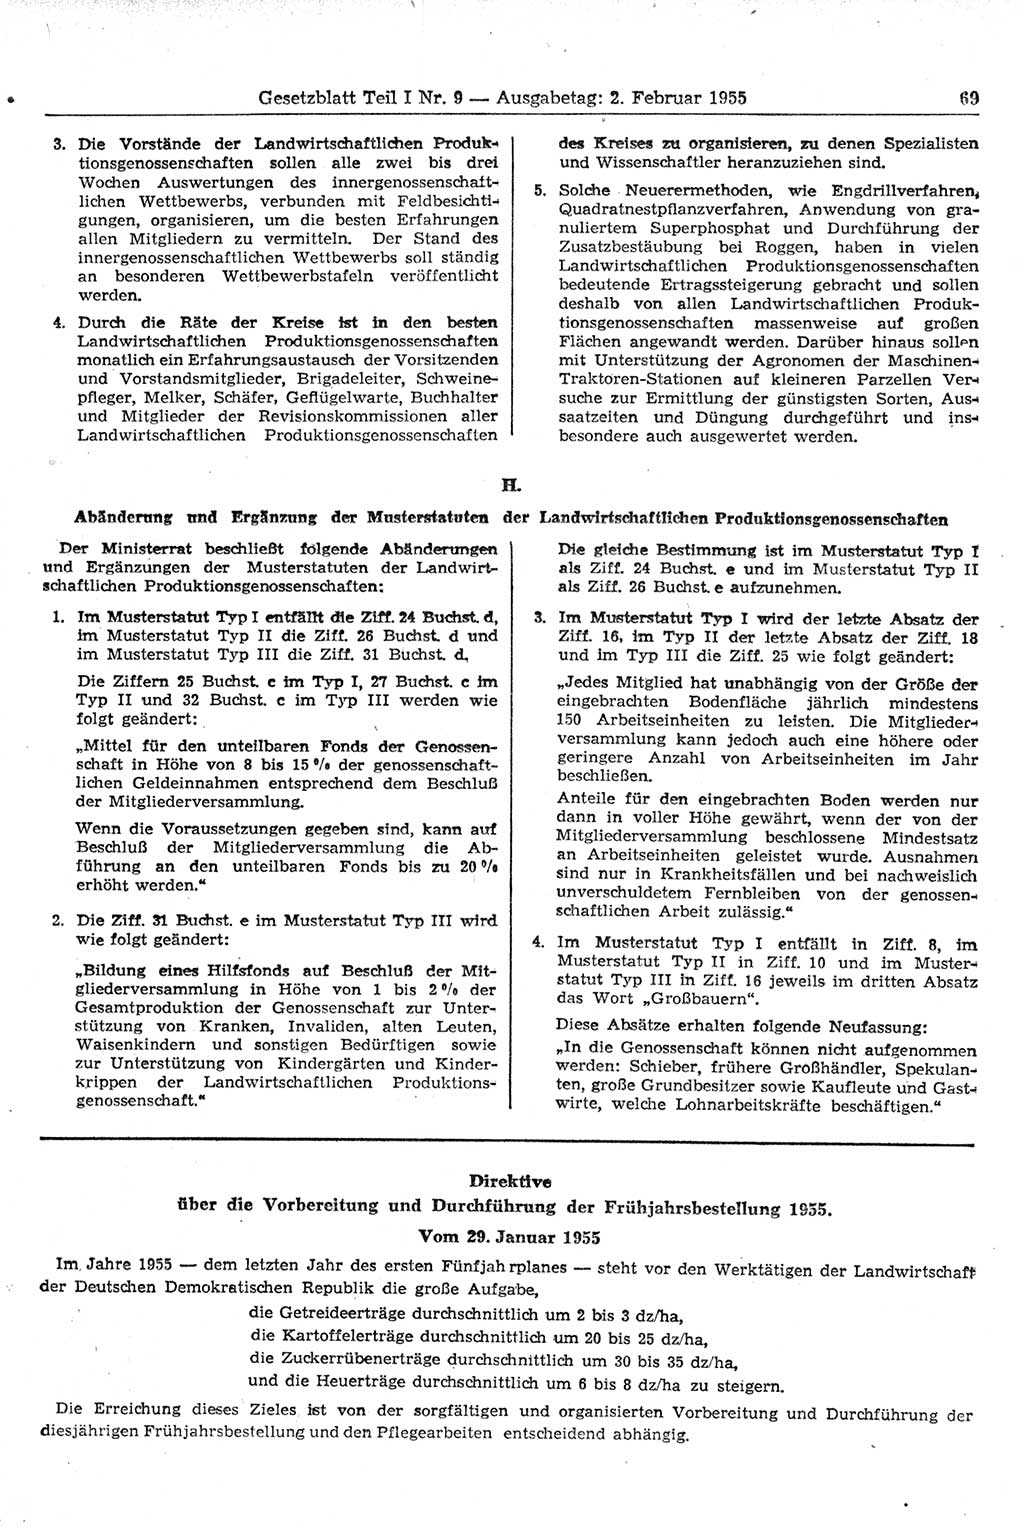 Gesetzblatt (GBl.) der Deutschen Demokratischen Republik (DDR) Teil Ⅰ 1955, Seite 69 (GBl. DDR Ⅰ 1955, S. 69)